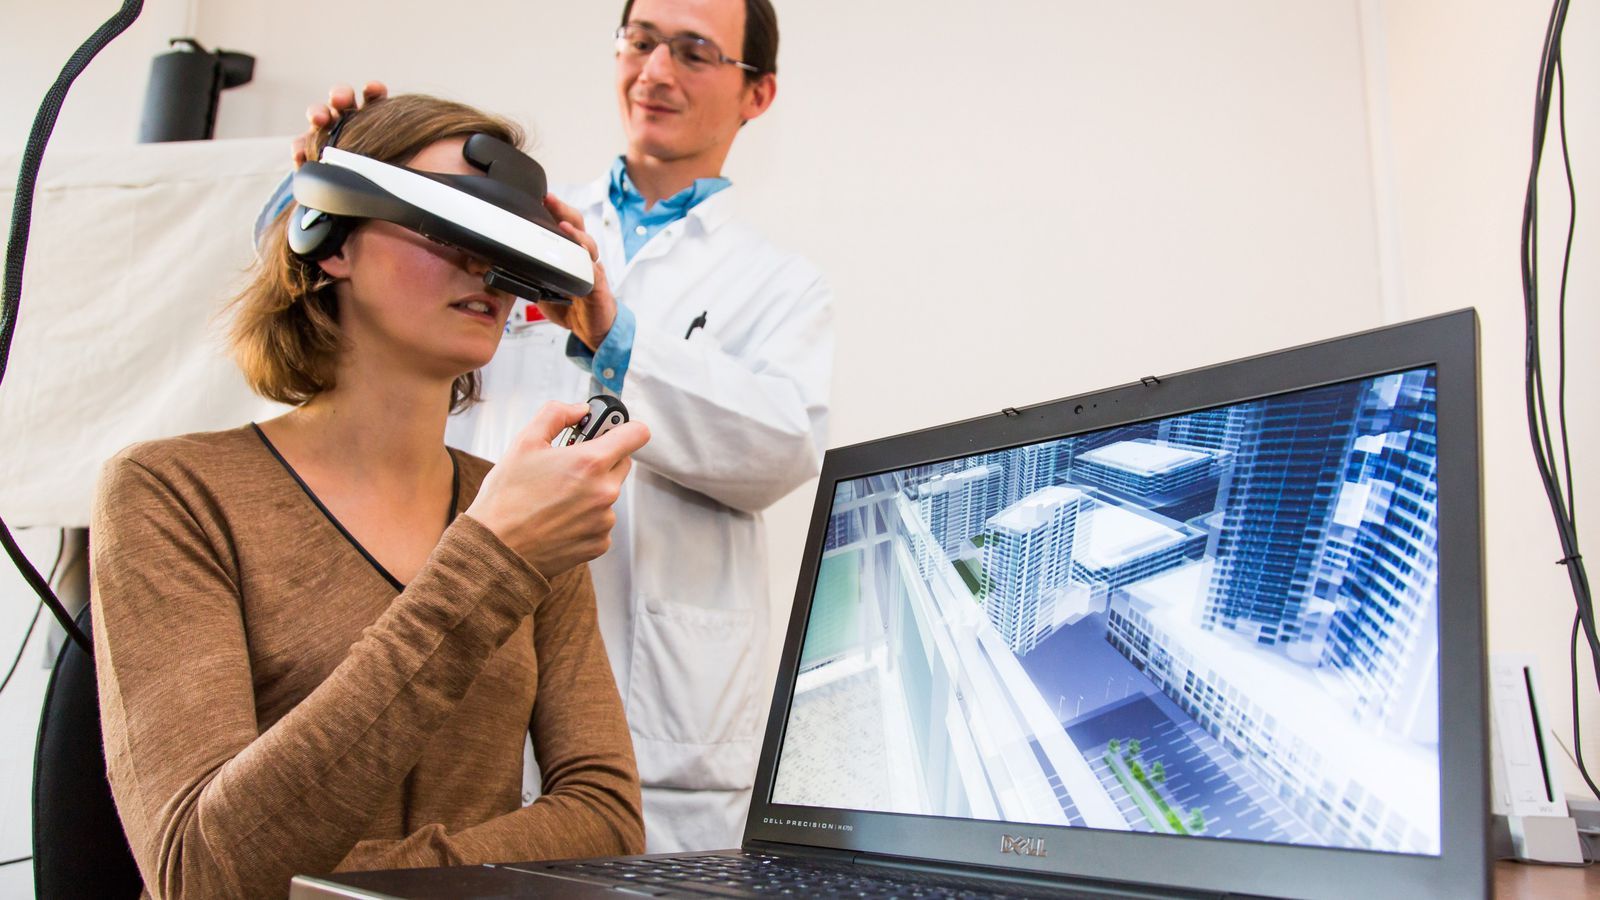 Realidad virtual ayudaría a reducir miedos y fobias en adultos con autismo